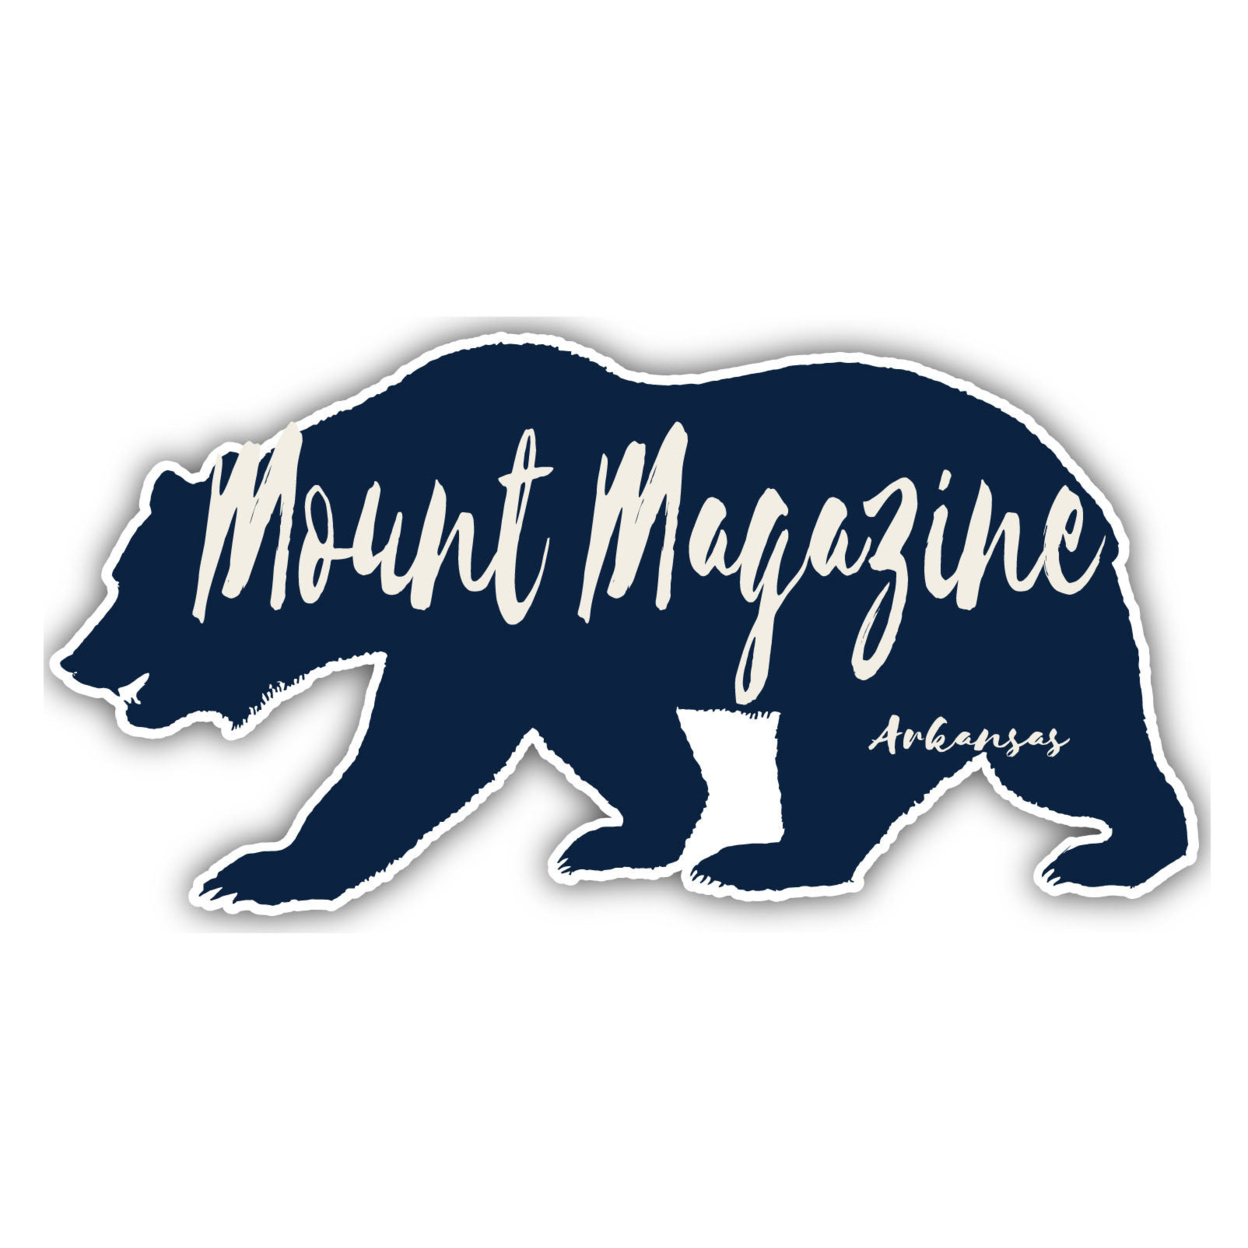 Mount Magazine Arkansas Souvenir Decorative Stickers (Choose Theme And Size) - Single Unit, 4-Inch, Tent